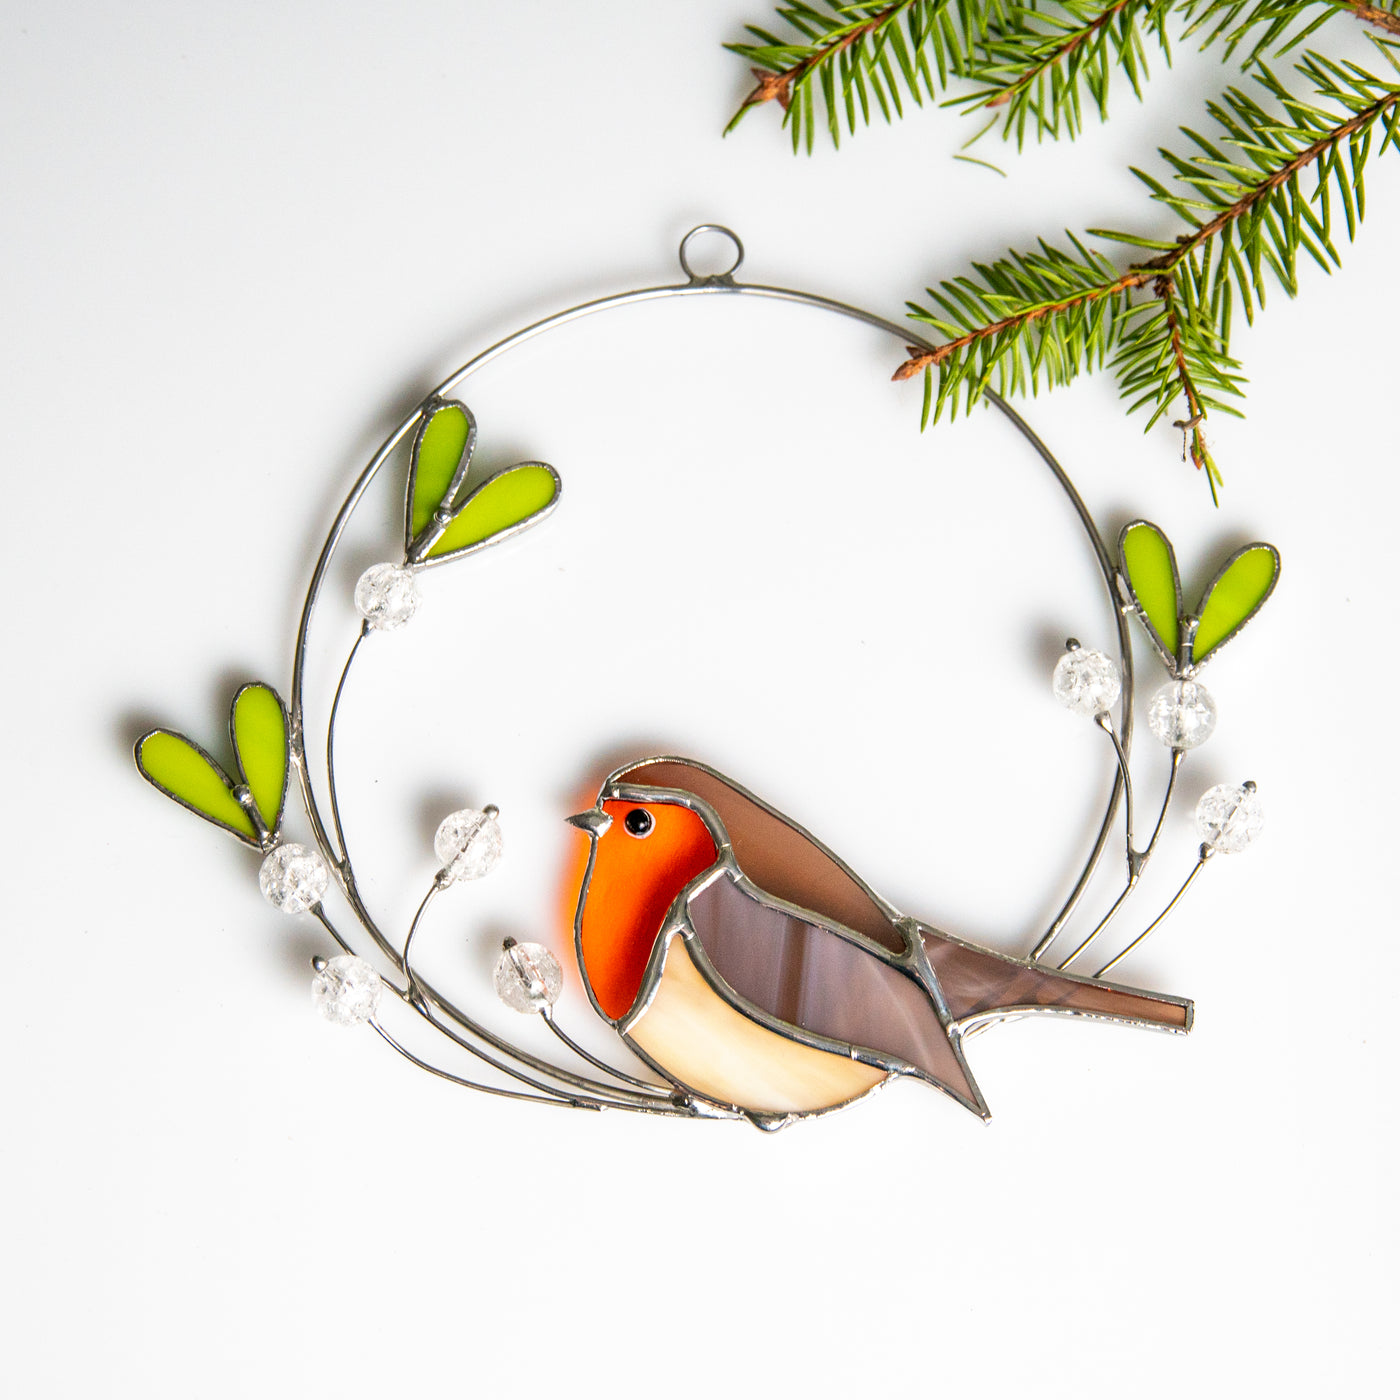 Stained glass robin on the mistletoe suncatcher for Christmas decor